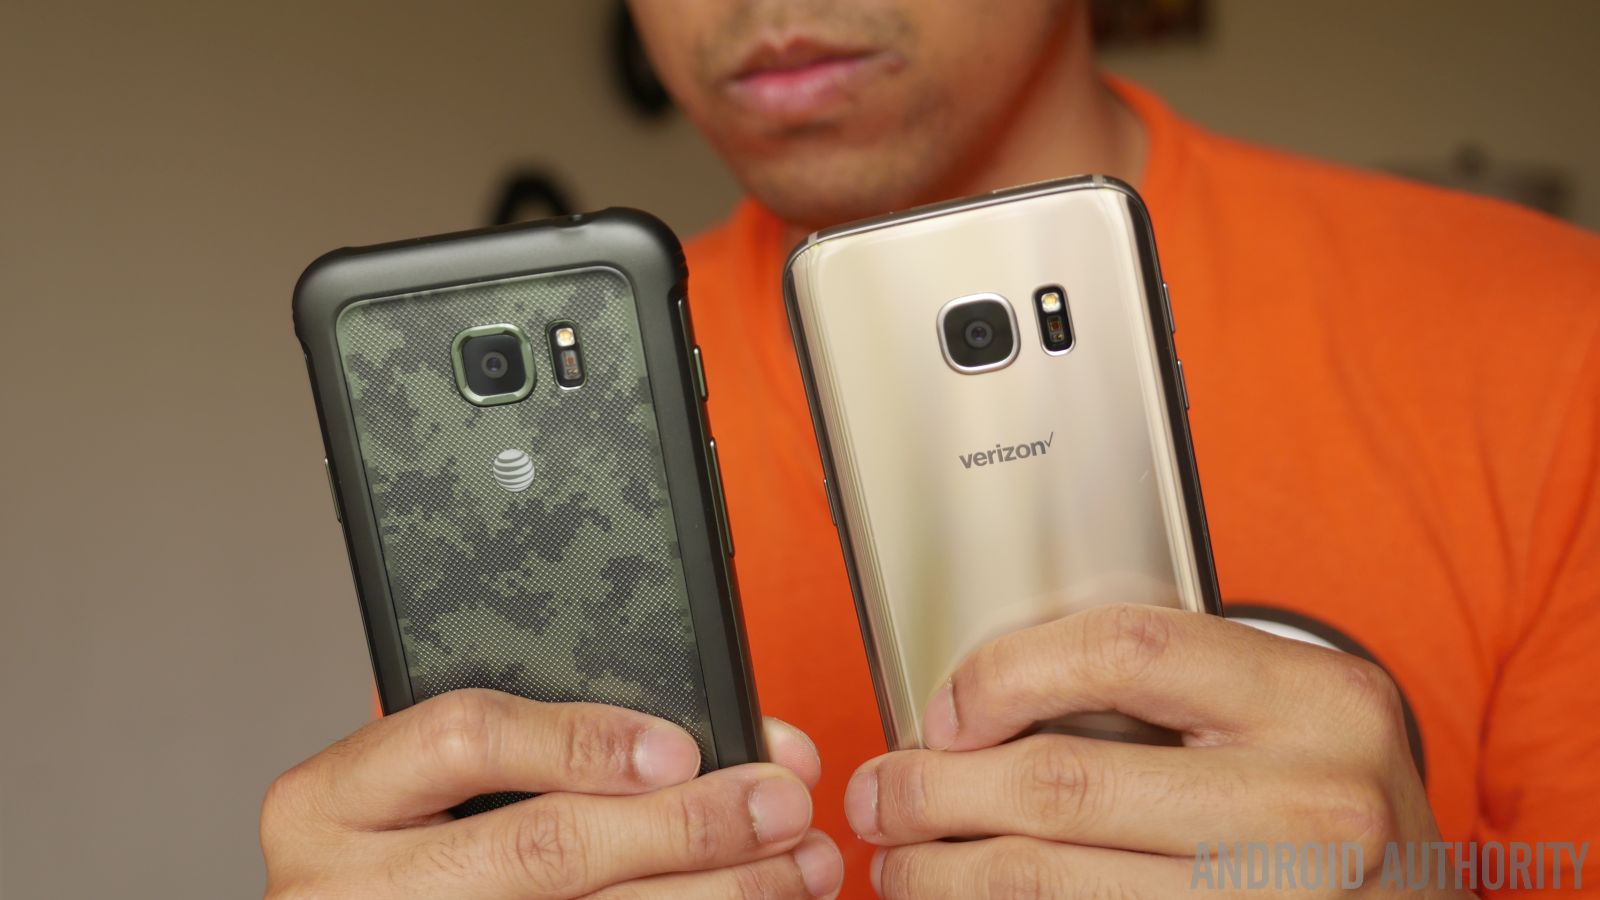 beetje smaak Niet verwacht Galaxy S7 Active vs Samsung Galaxy S7 quick look - Android Authority